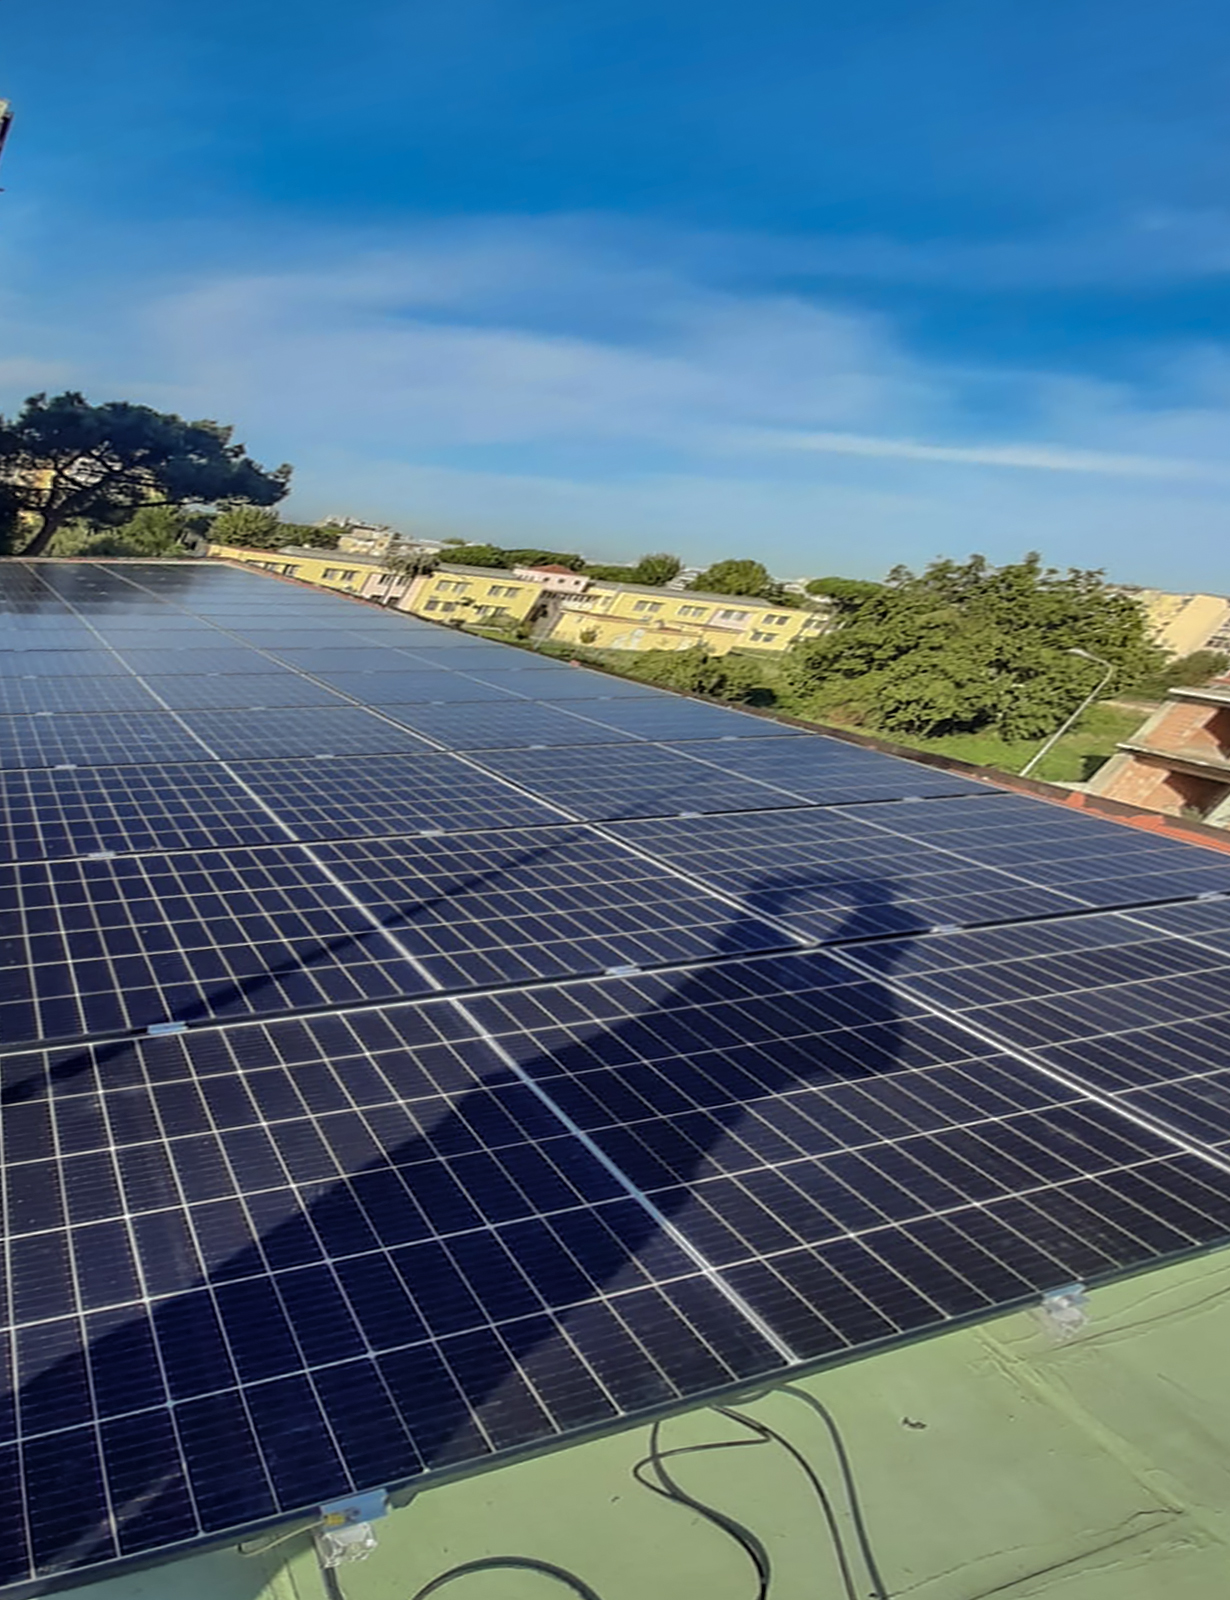 Impianto Fotovoltaico 20 kWp - Melito di Napoli, (Napoli) DMT Solar impianti fotovoltaici in tutta Italia residenziale e aziendale business, installatore certificato Tesla Powerwall e Sunpower Maxeon